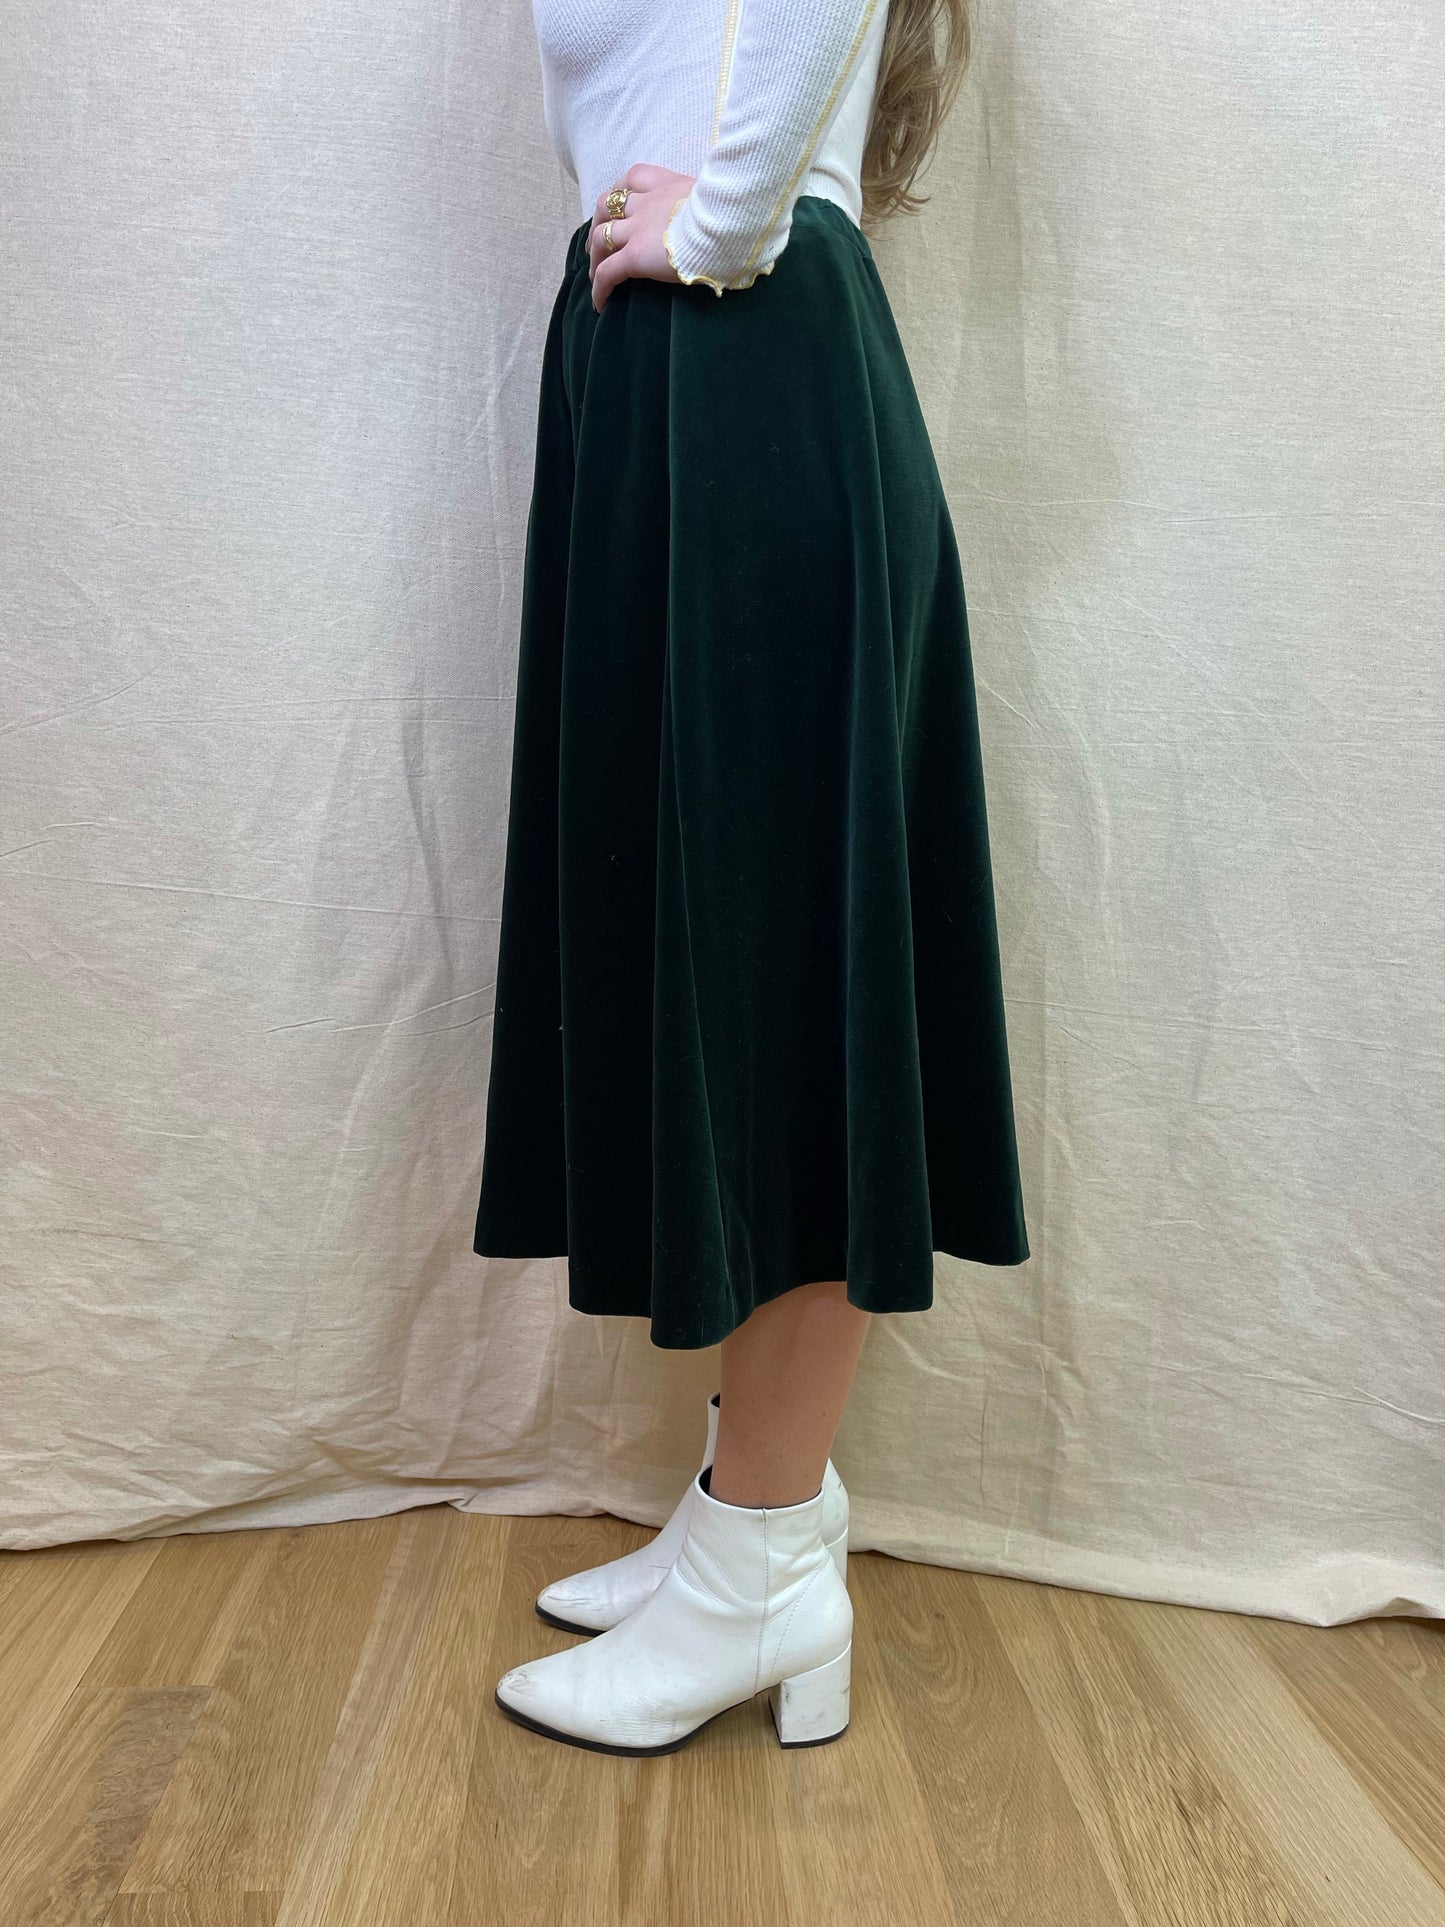 The Bonnie Skirt, 1980's